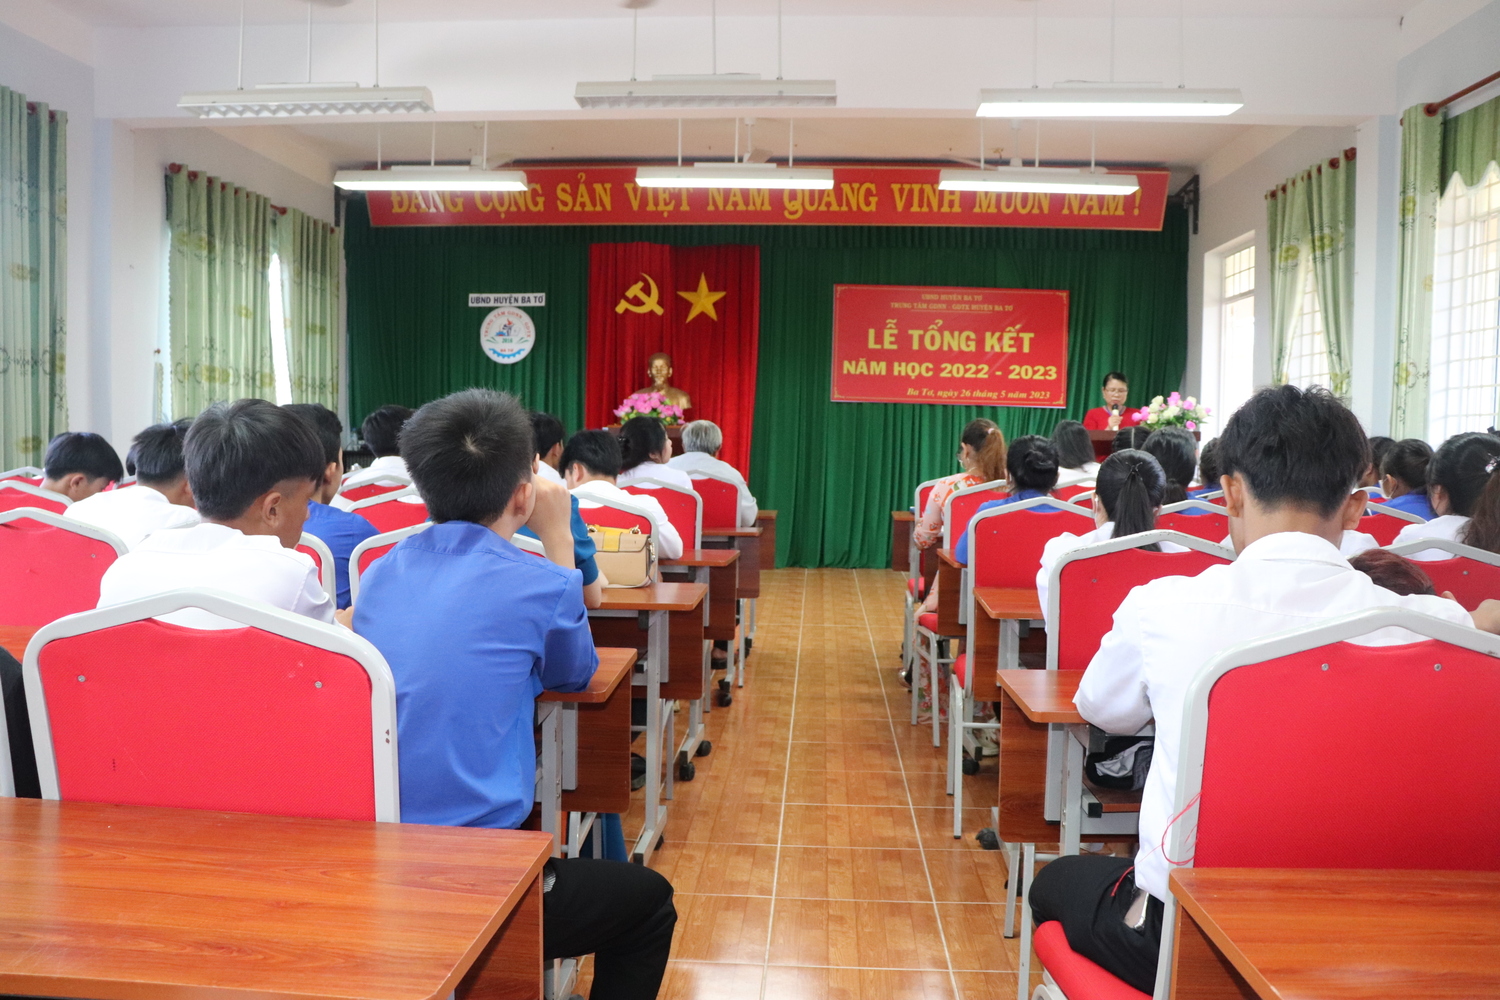 Trung tâm Giáo dục nghề nghiệp - Giáo dục thường xuyên huyện Ba Tơ đã tổ chức Lễ tổng kết năm học 2022- 2023